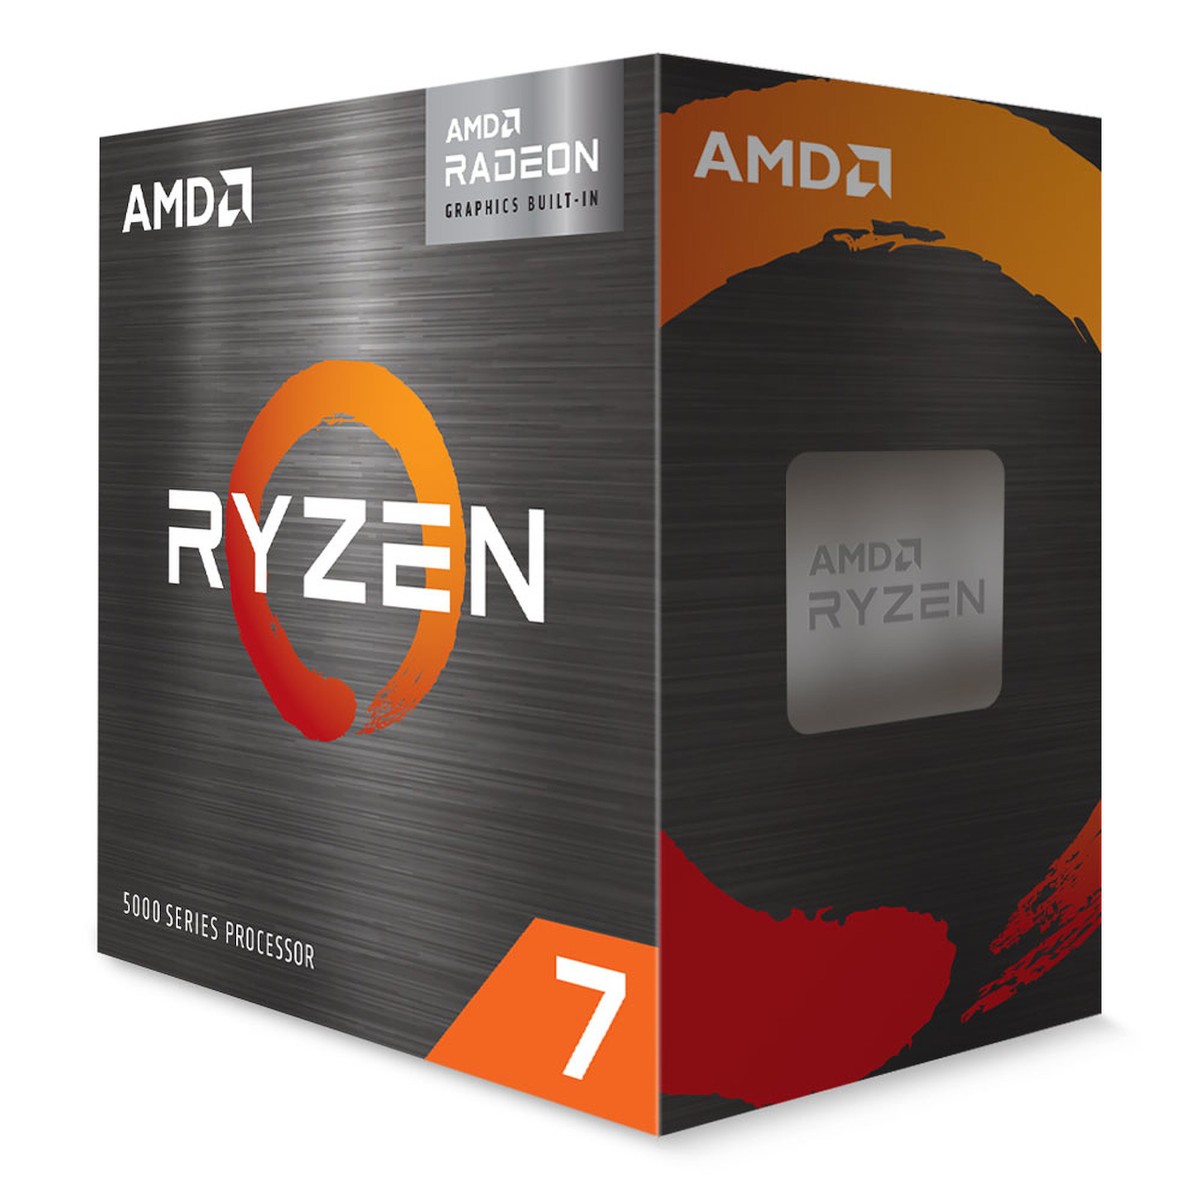 Bon Plan : Le processeur AMD 5700G à 249,99 euros !